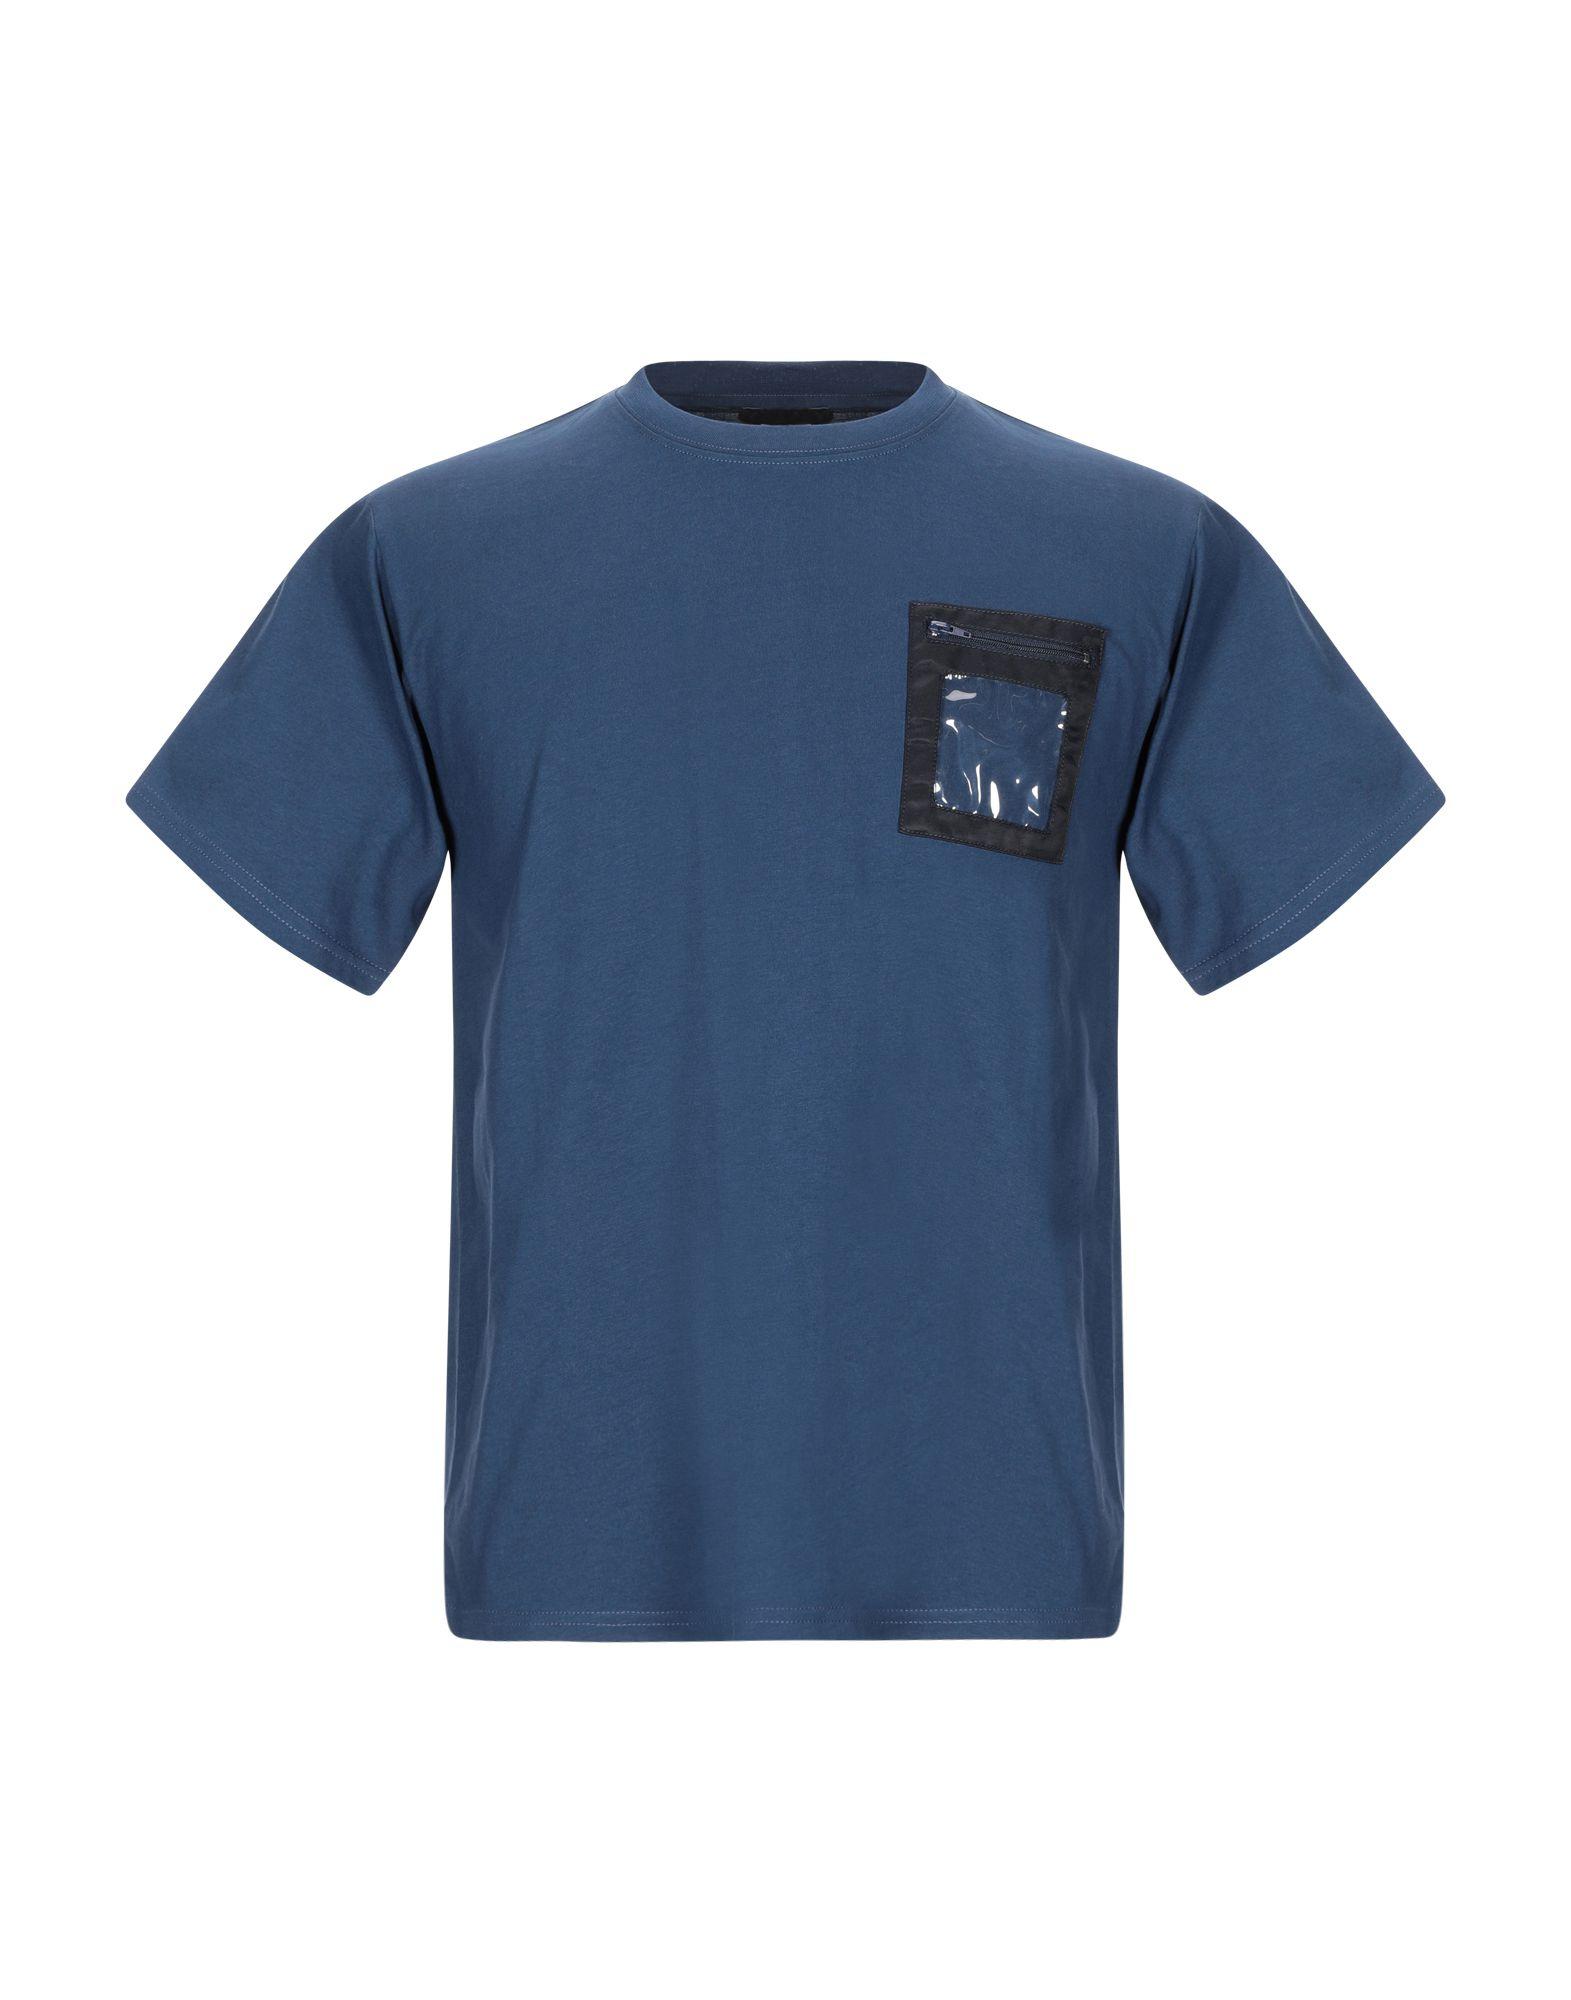 DUST Cotton T-shirt in Dark Blue (Blue) for Men - Lyst